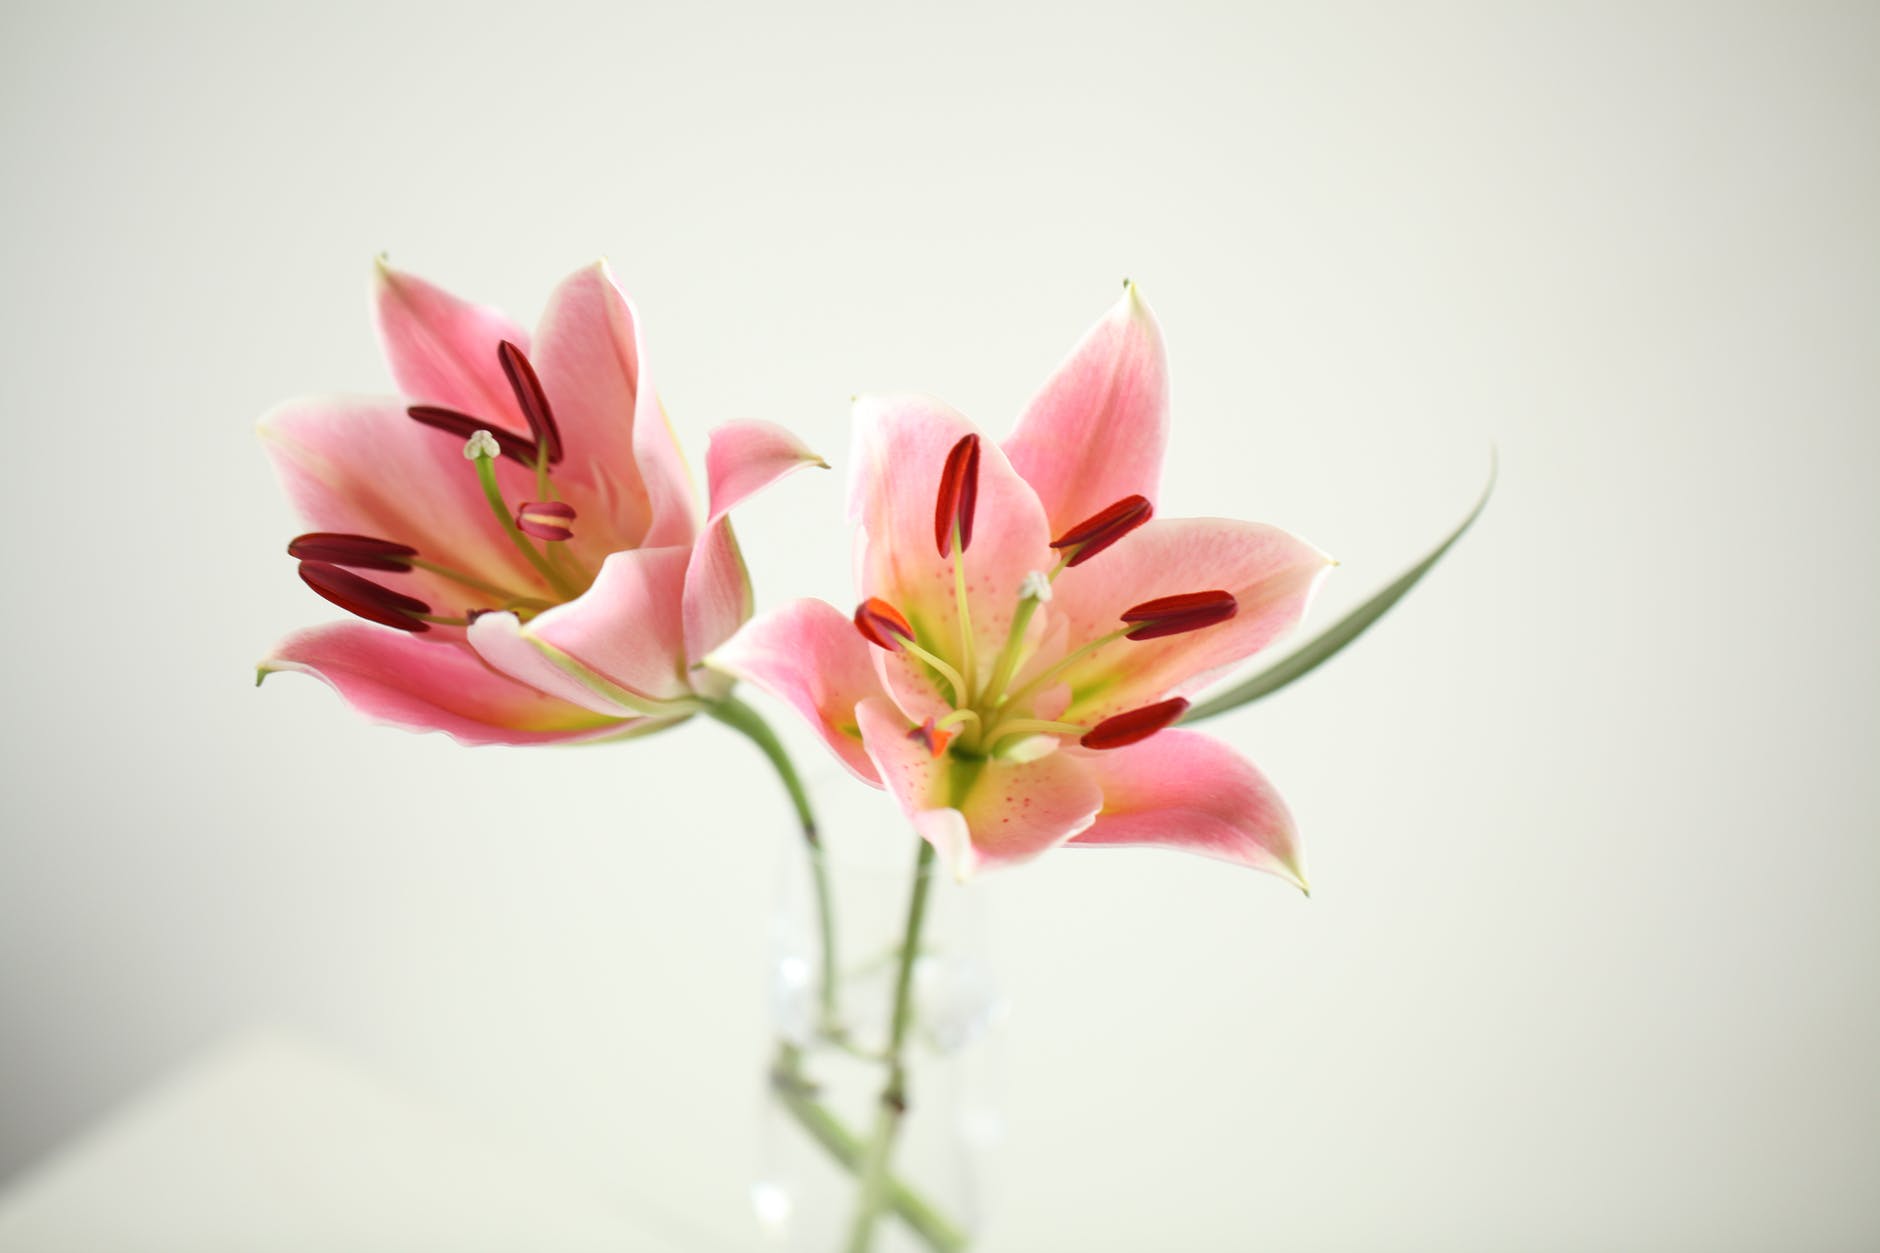 Hoa ly có thể tìm thấy ở bất cứ cửa hàng dịch vụ điện hoa vip ở Hà Nội